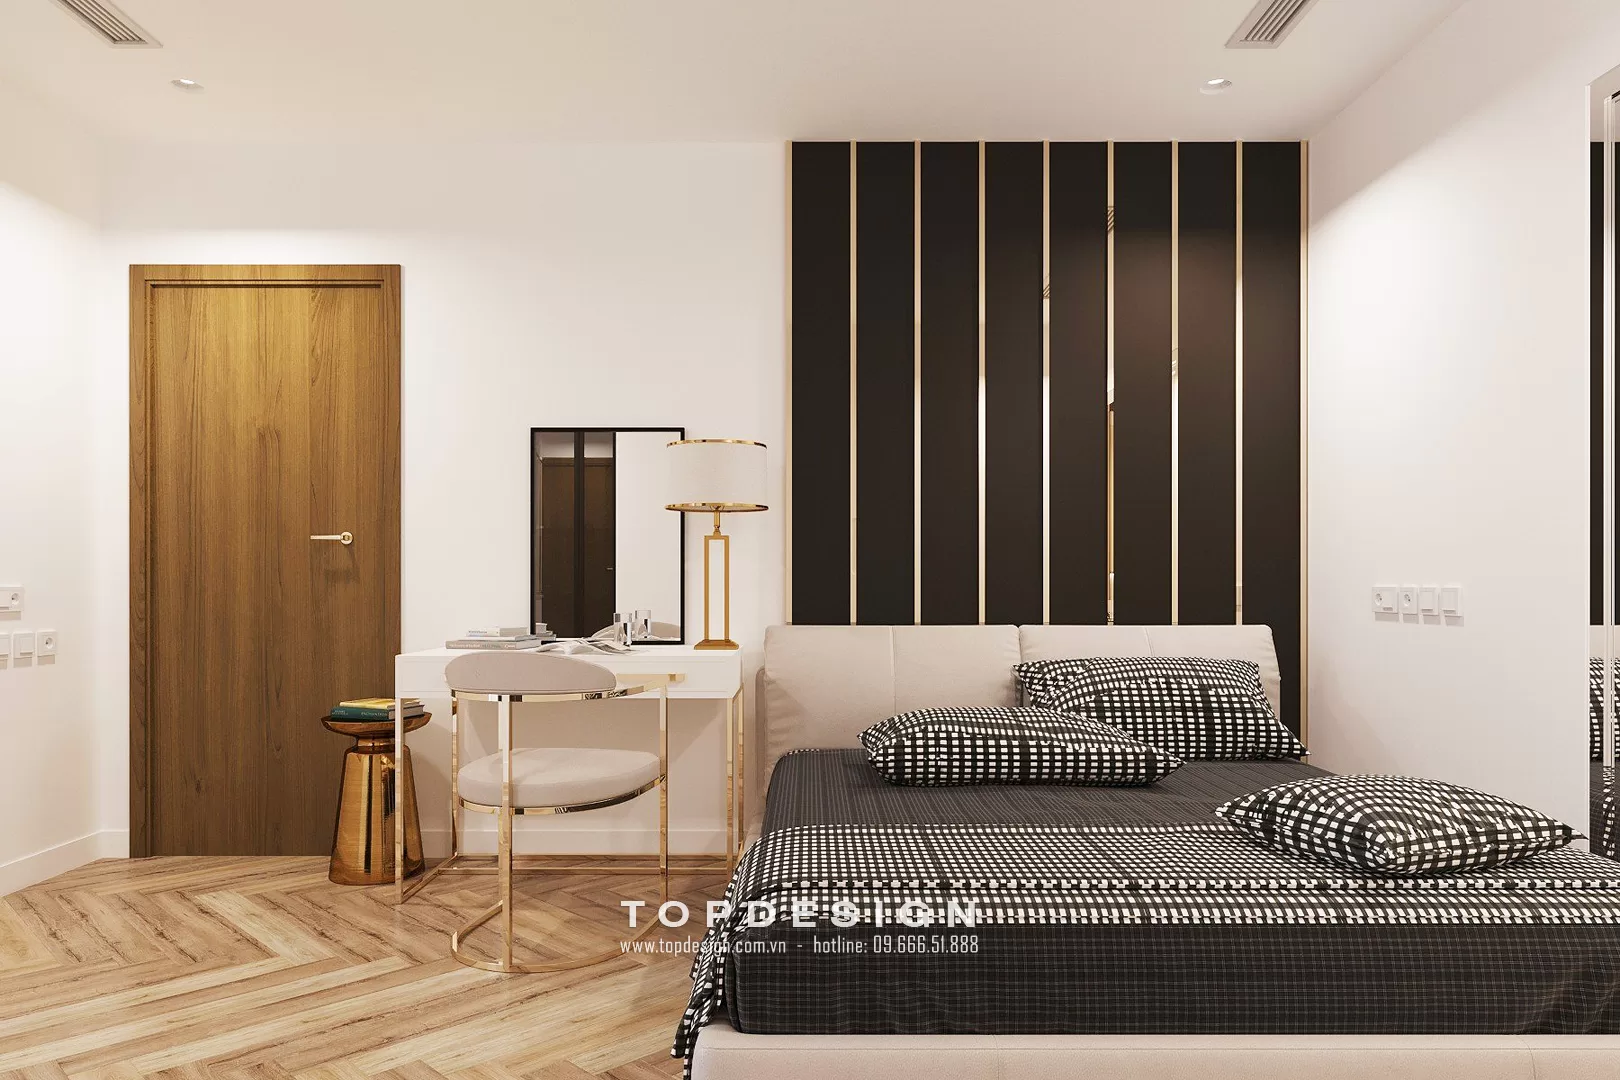 Mẫu thiết kế nội thất chung cư - TOPDESIGN - 17